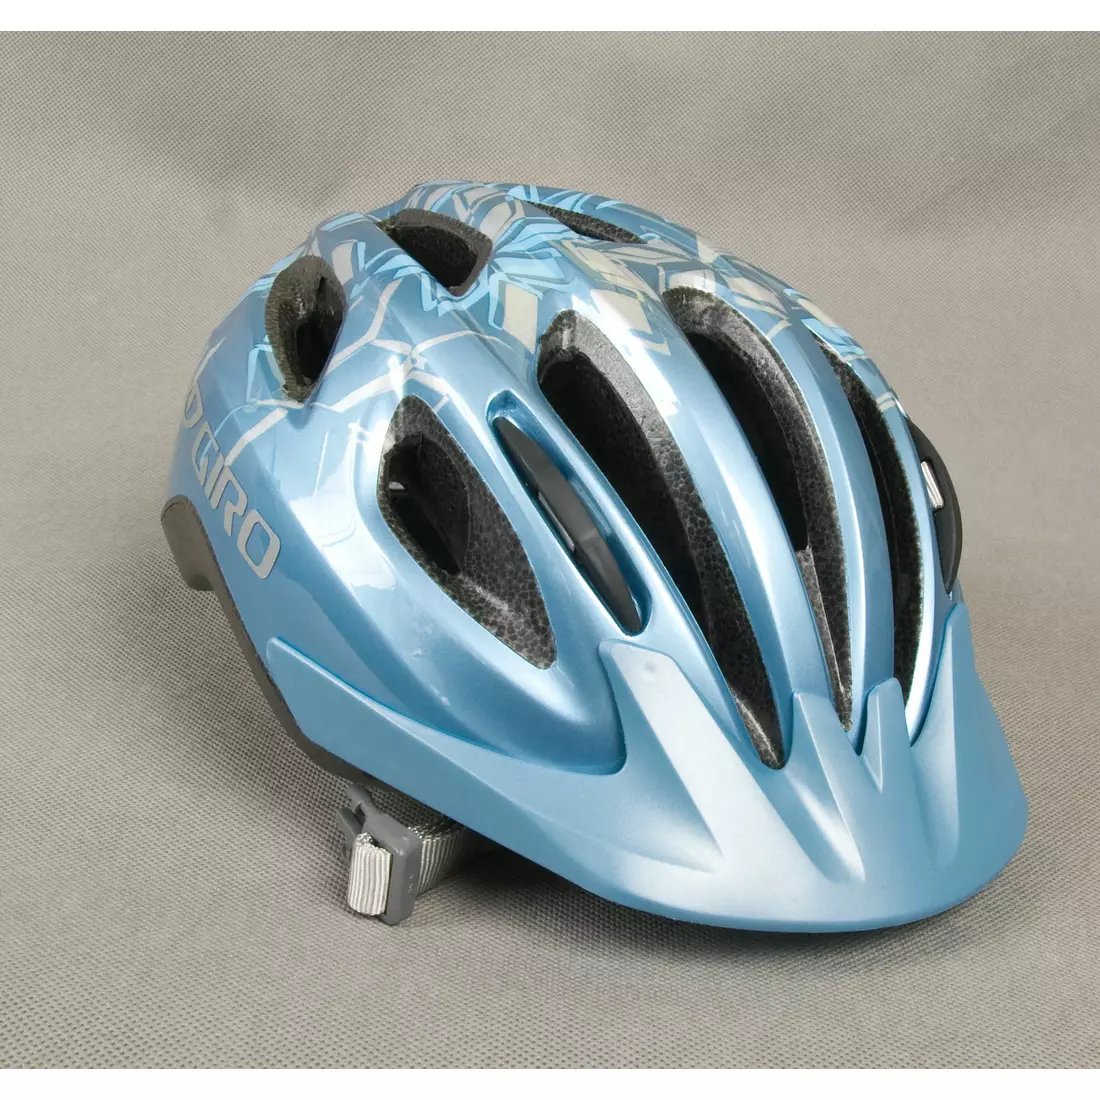 GIRO VENUS II női kerékpáros sisak, színe: kék-fehér